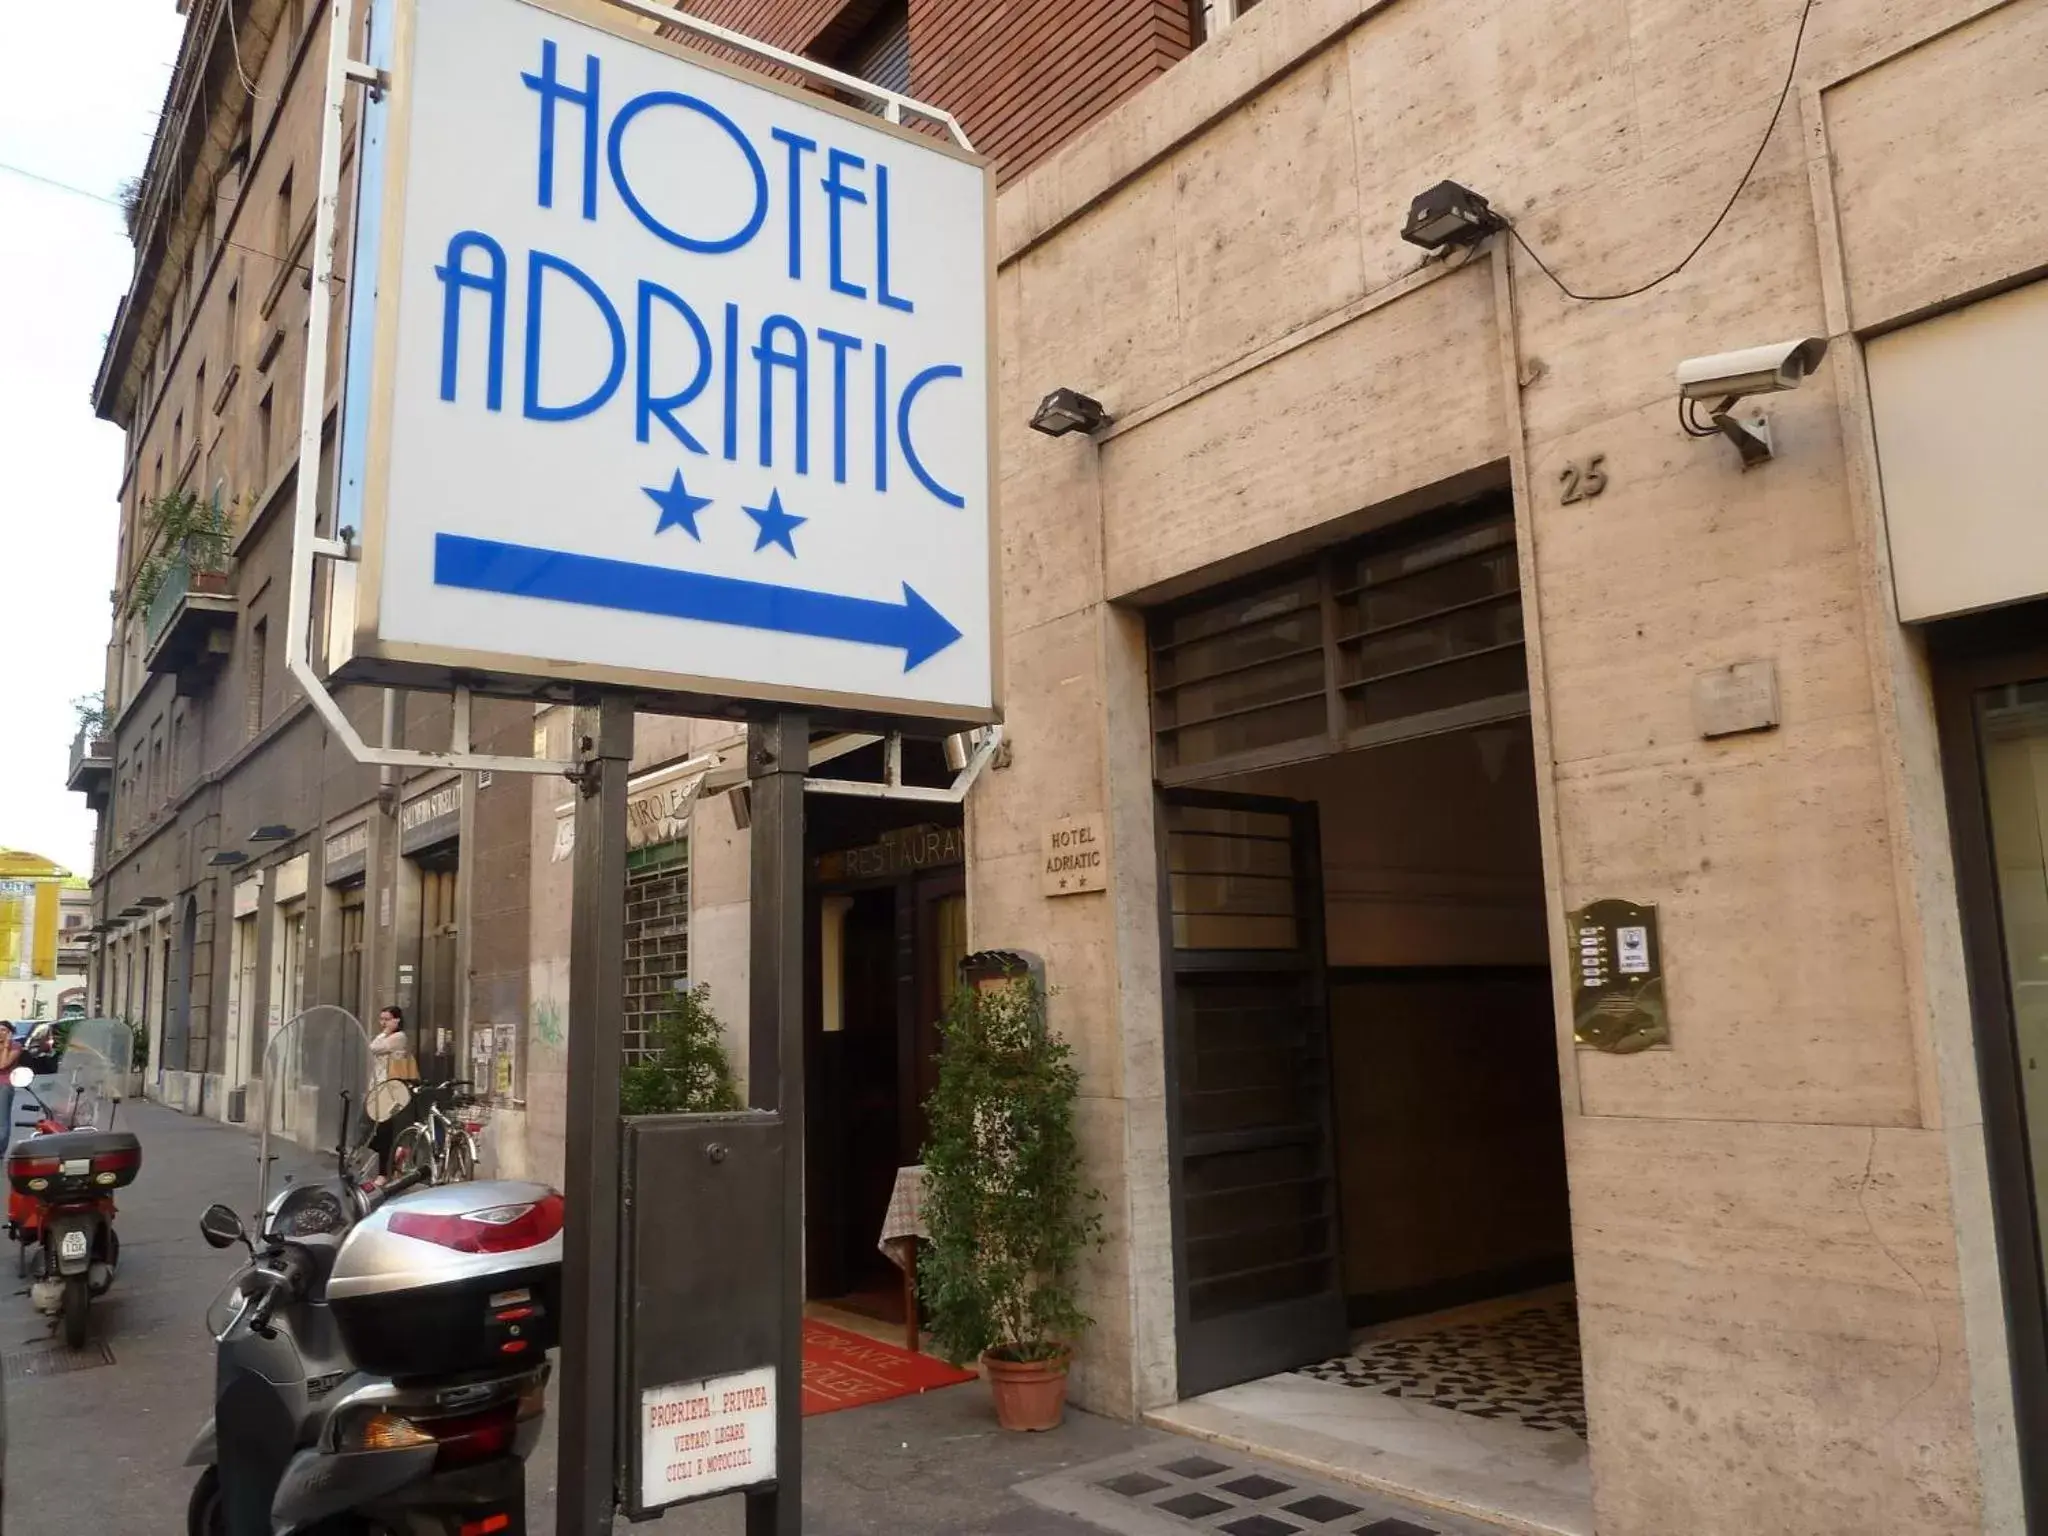 Facade/entrance in Hotel Adriatic